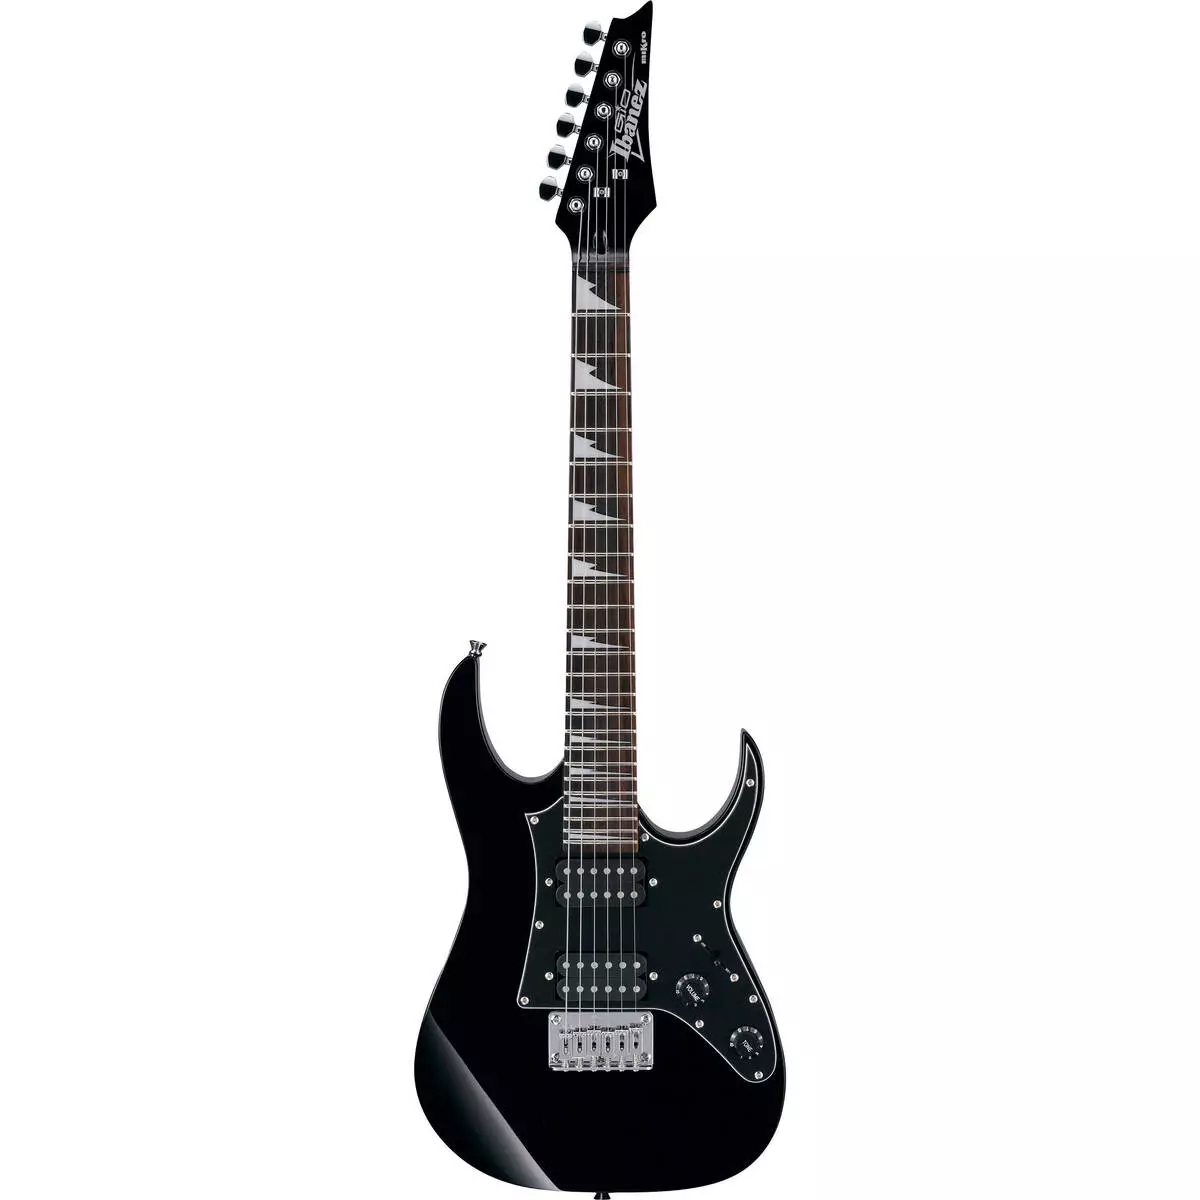 ब्लैक गिटार: क्लासिक छह-स्ट्रिंग और अन्य गिटार, सफेद और लाल-काला रंग, मैट और चमक 26252_11